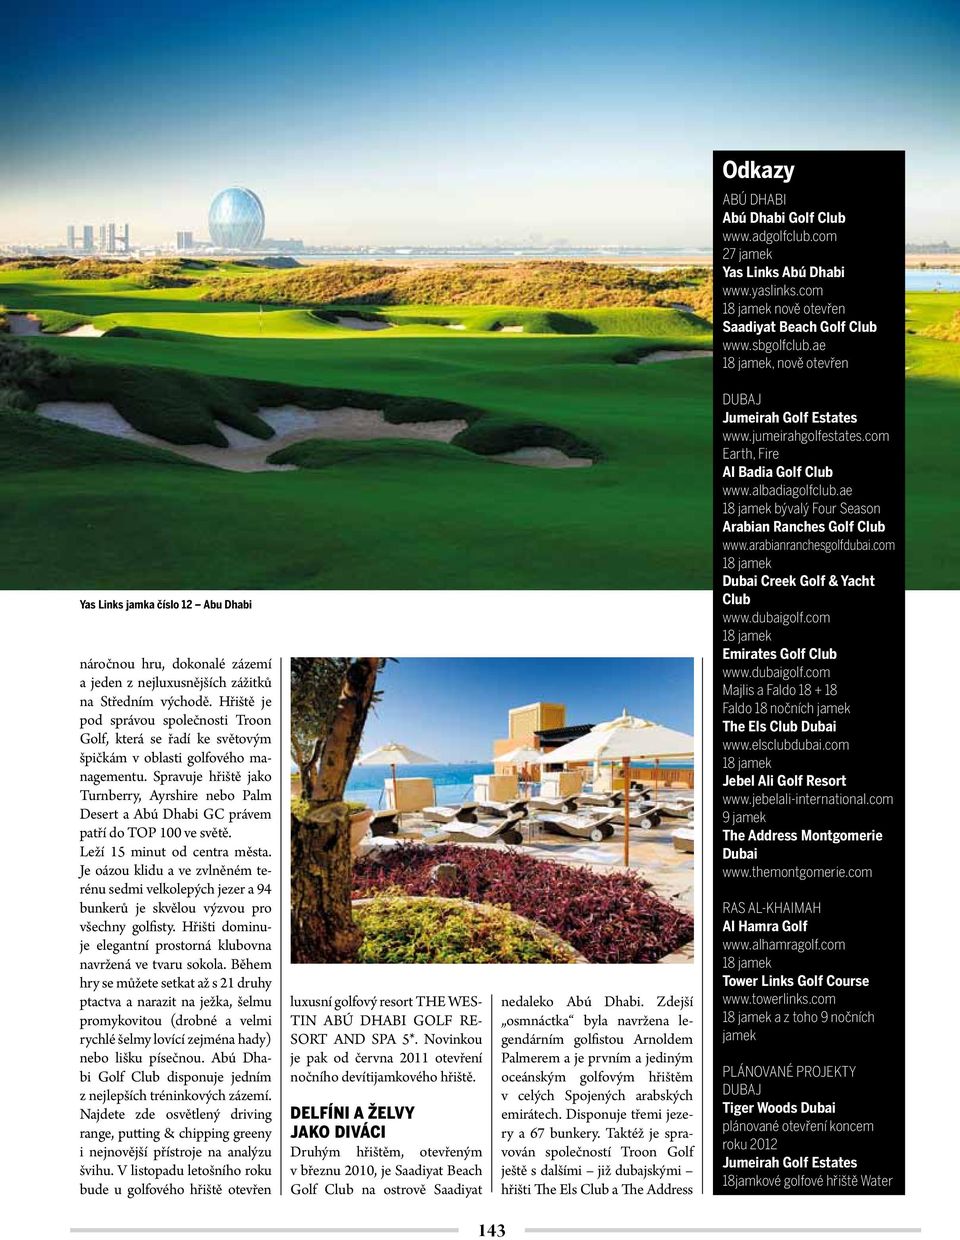 Hřiště je pod správou společnosti Troon Golf, která se řadí ke světovým špičkám v oblasti golfového managementu.